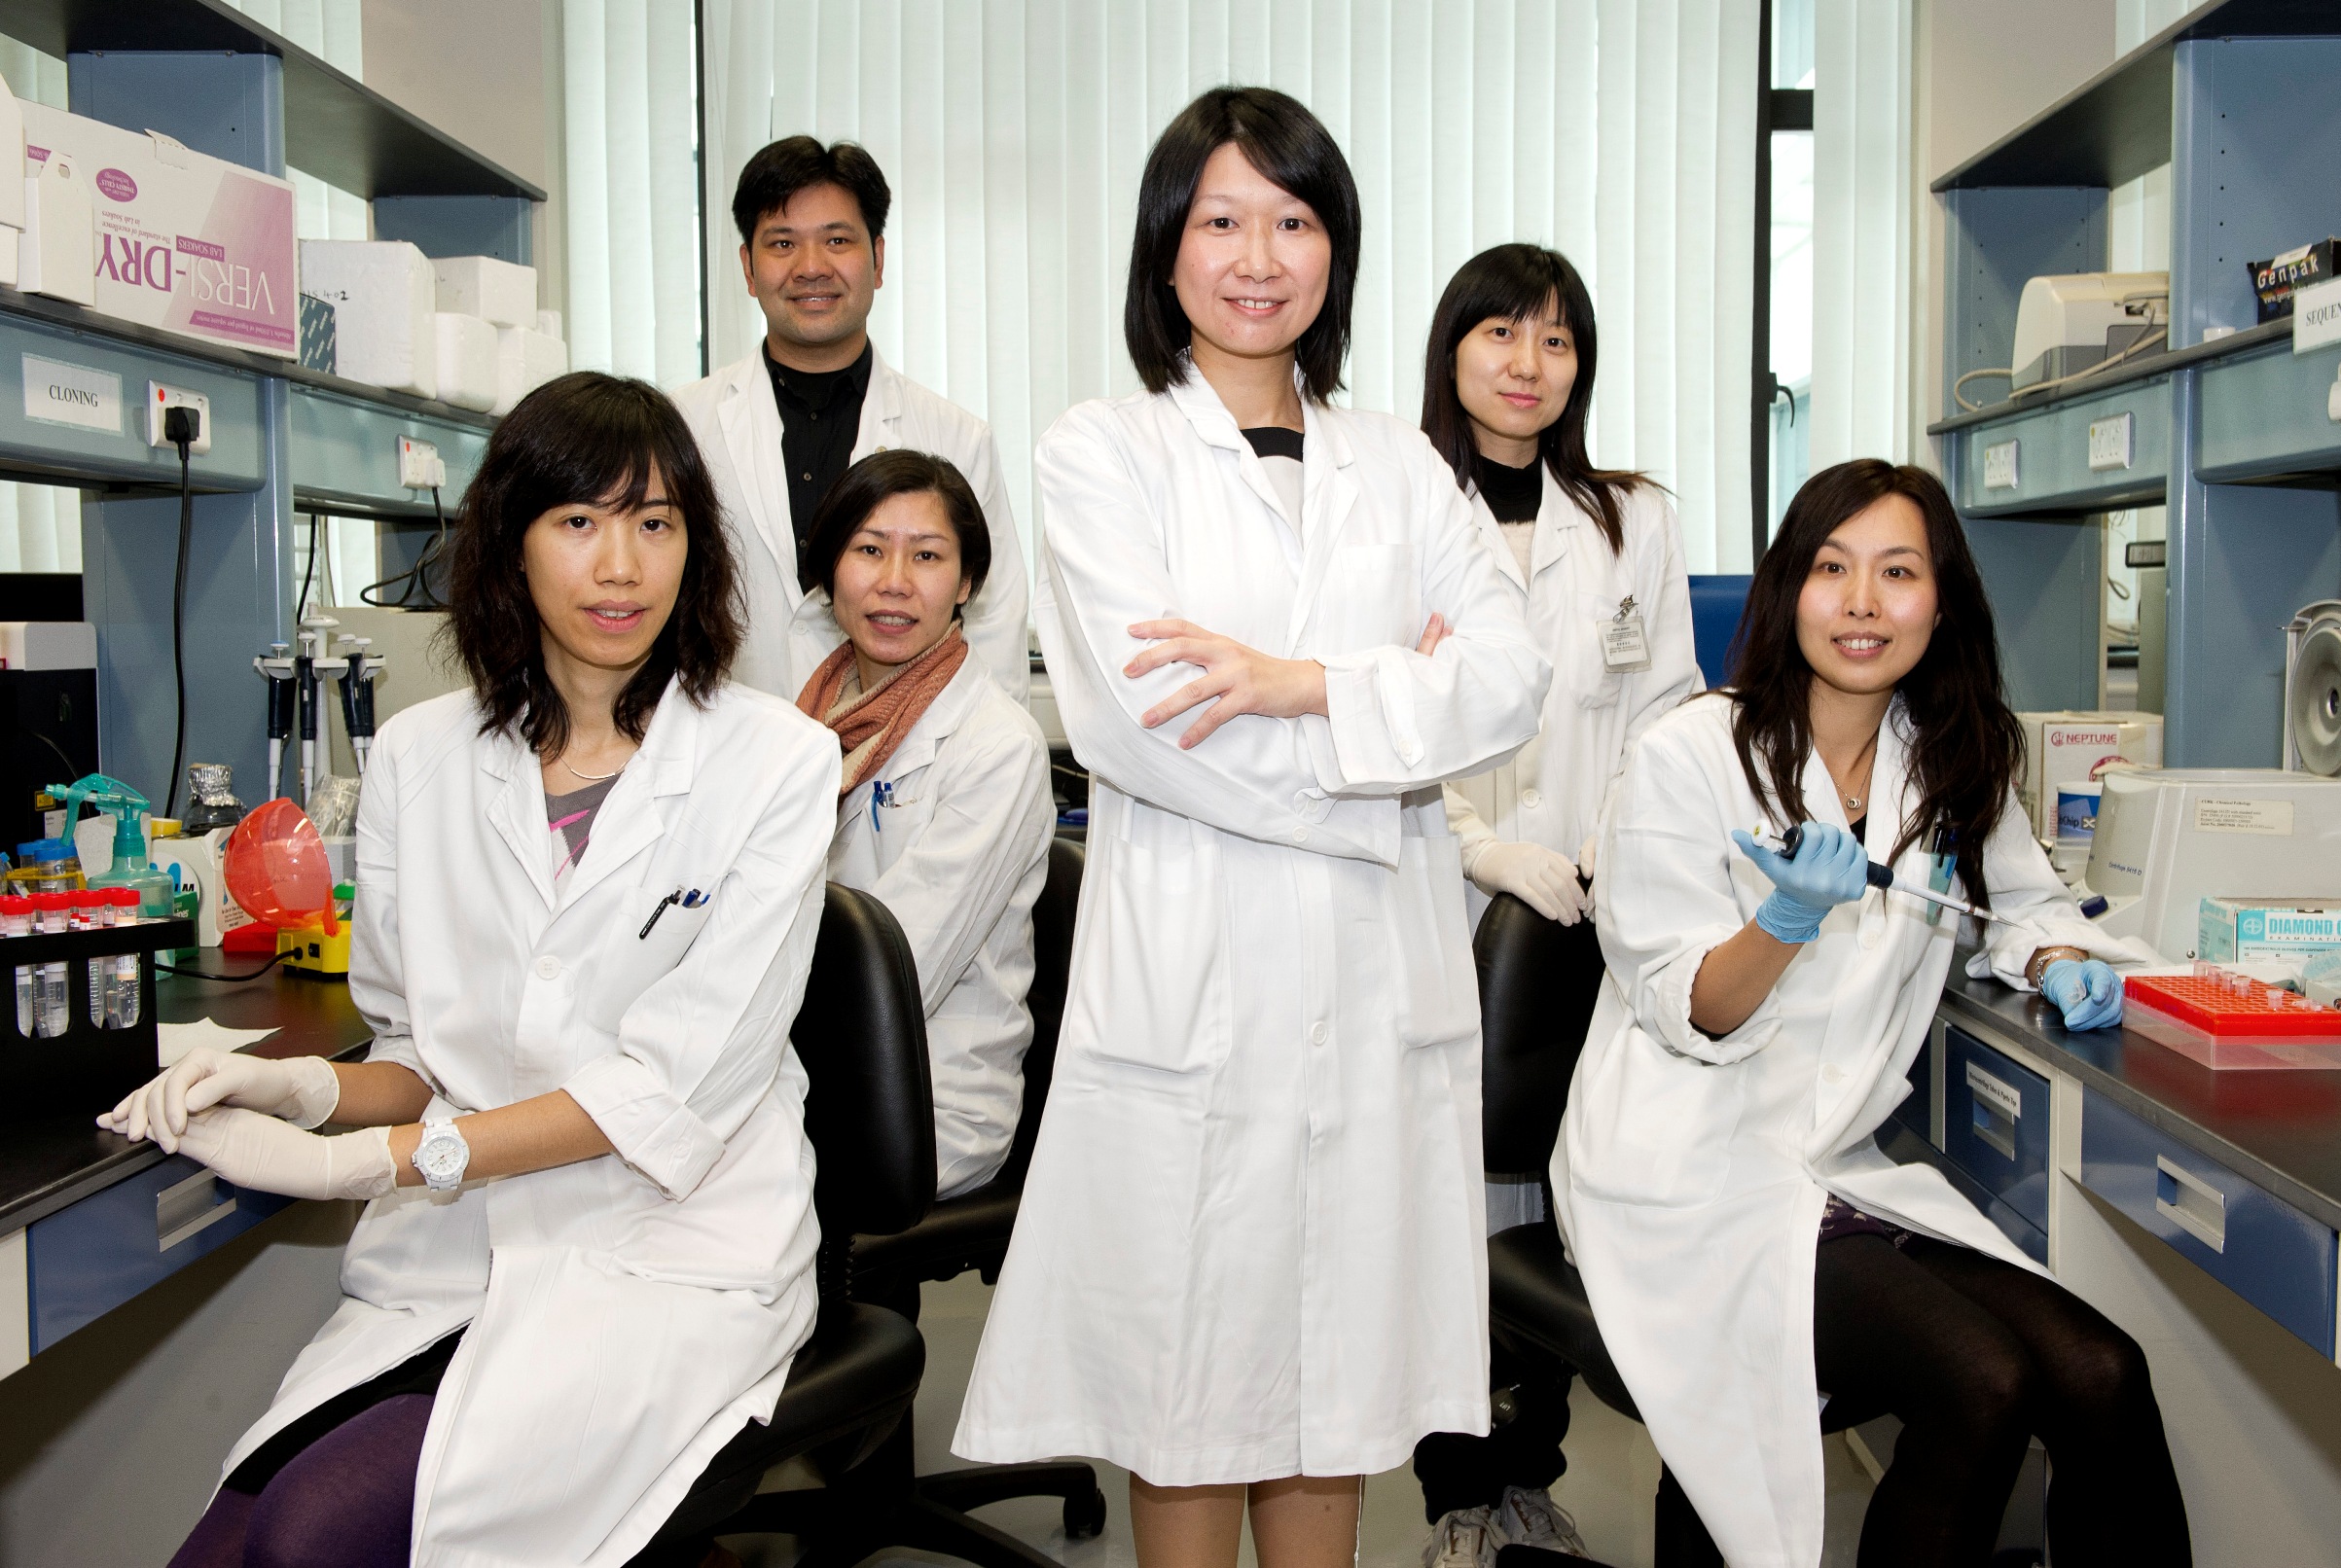 Professor Rossa Chiu and her research team